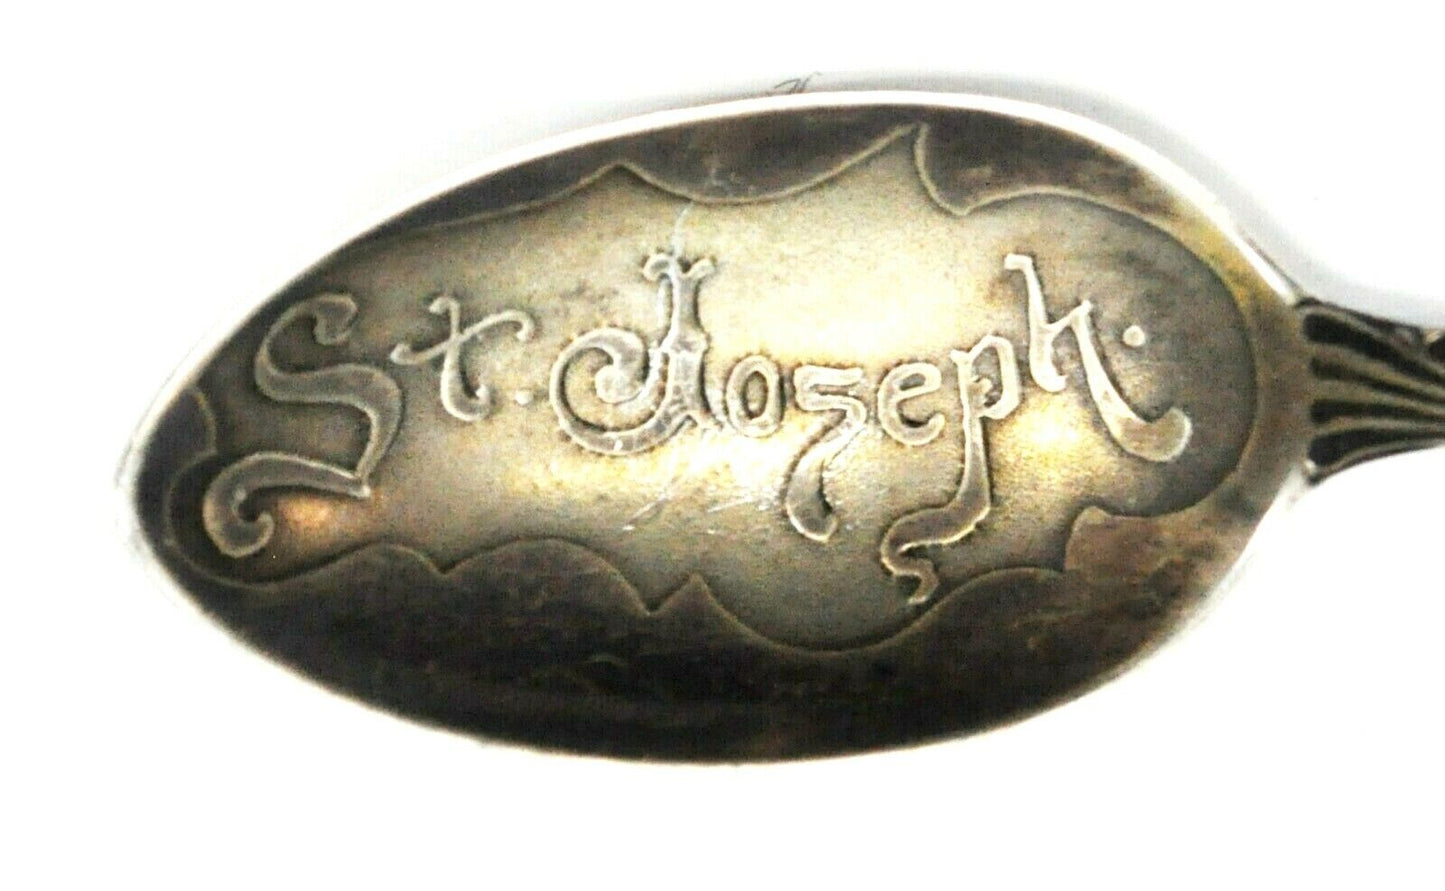 Wendell Sterling Missouri Souvenir Spoon St Joseph Embossed Bowl 5.5"